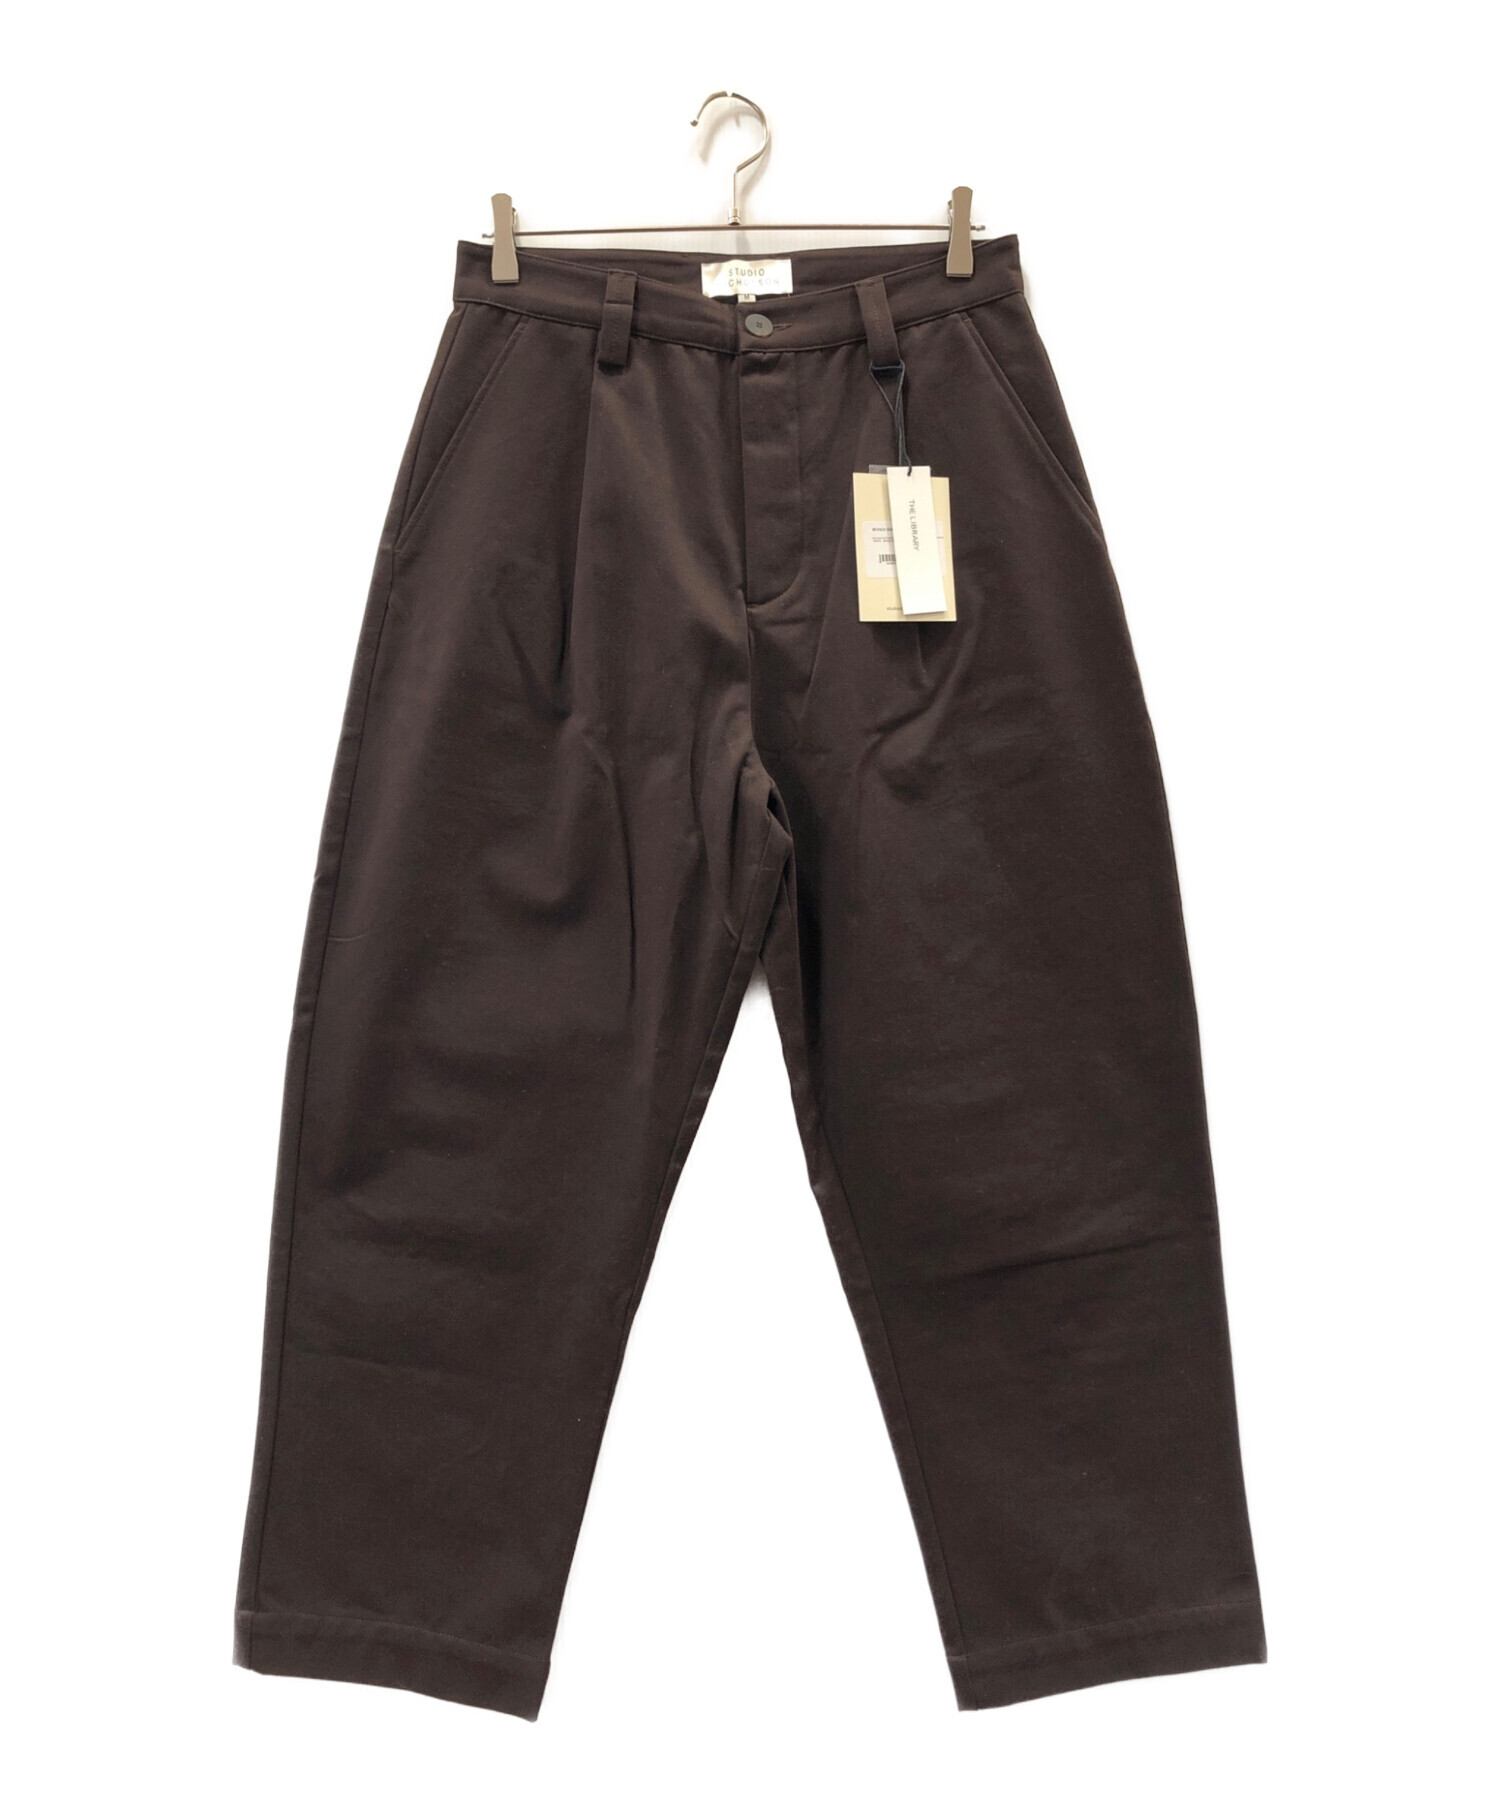 STUDIO NICHOLSON (スタジオニコルソン) bionda single pleat tapered pants ブラウン サイズ:M